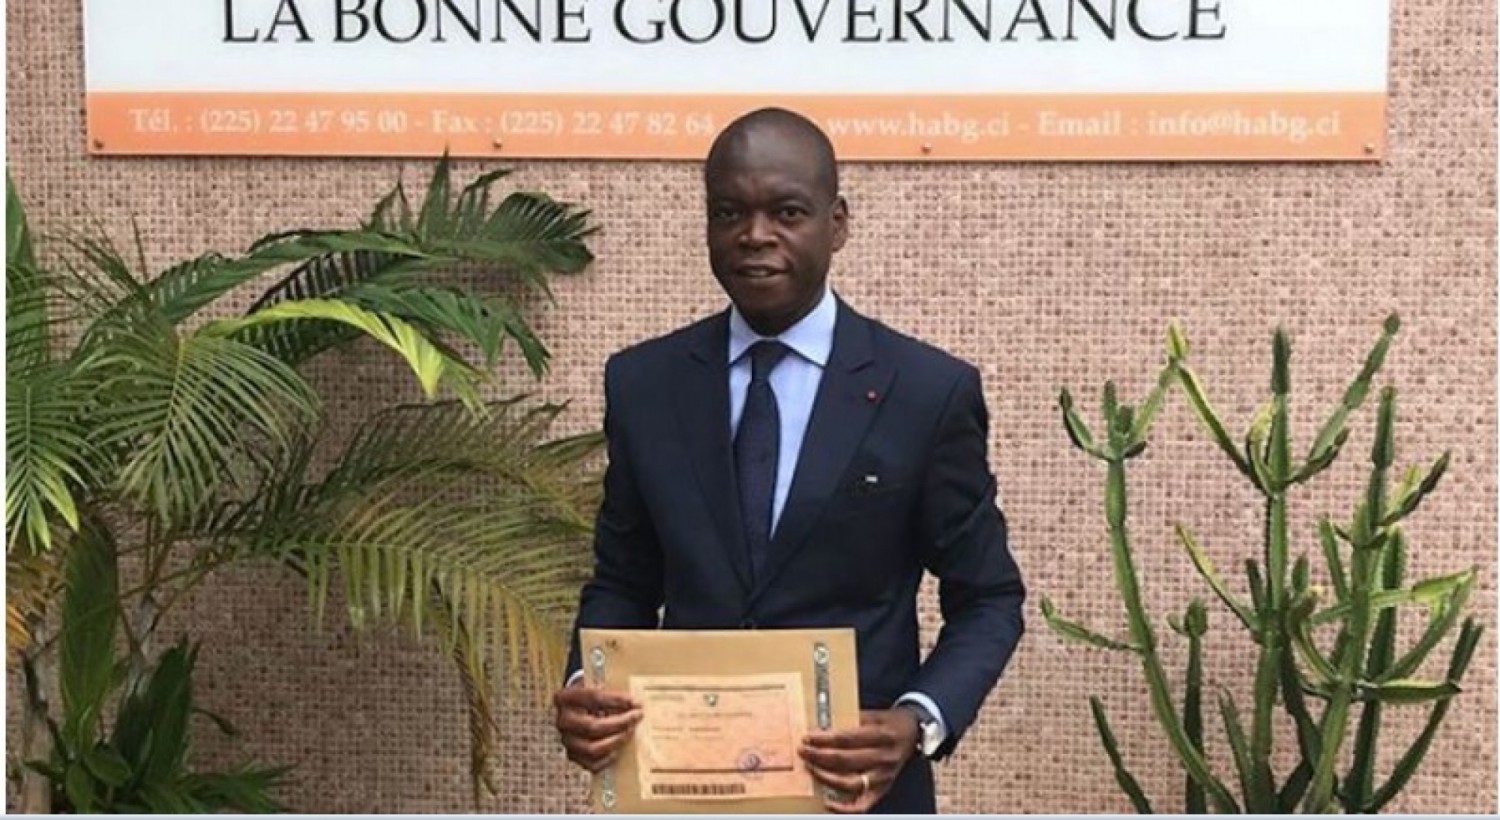 Côte d'Ivoire : Haute autorité pour la Bonne Gouvernance, un Secrétaire général et des membres du Conseil nommés